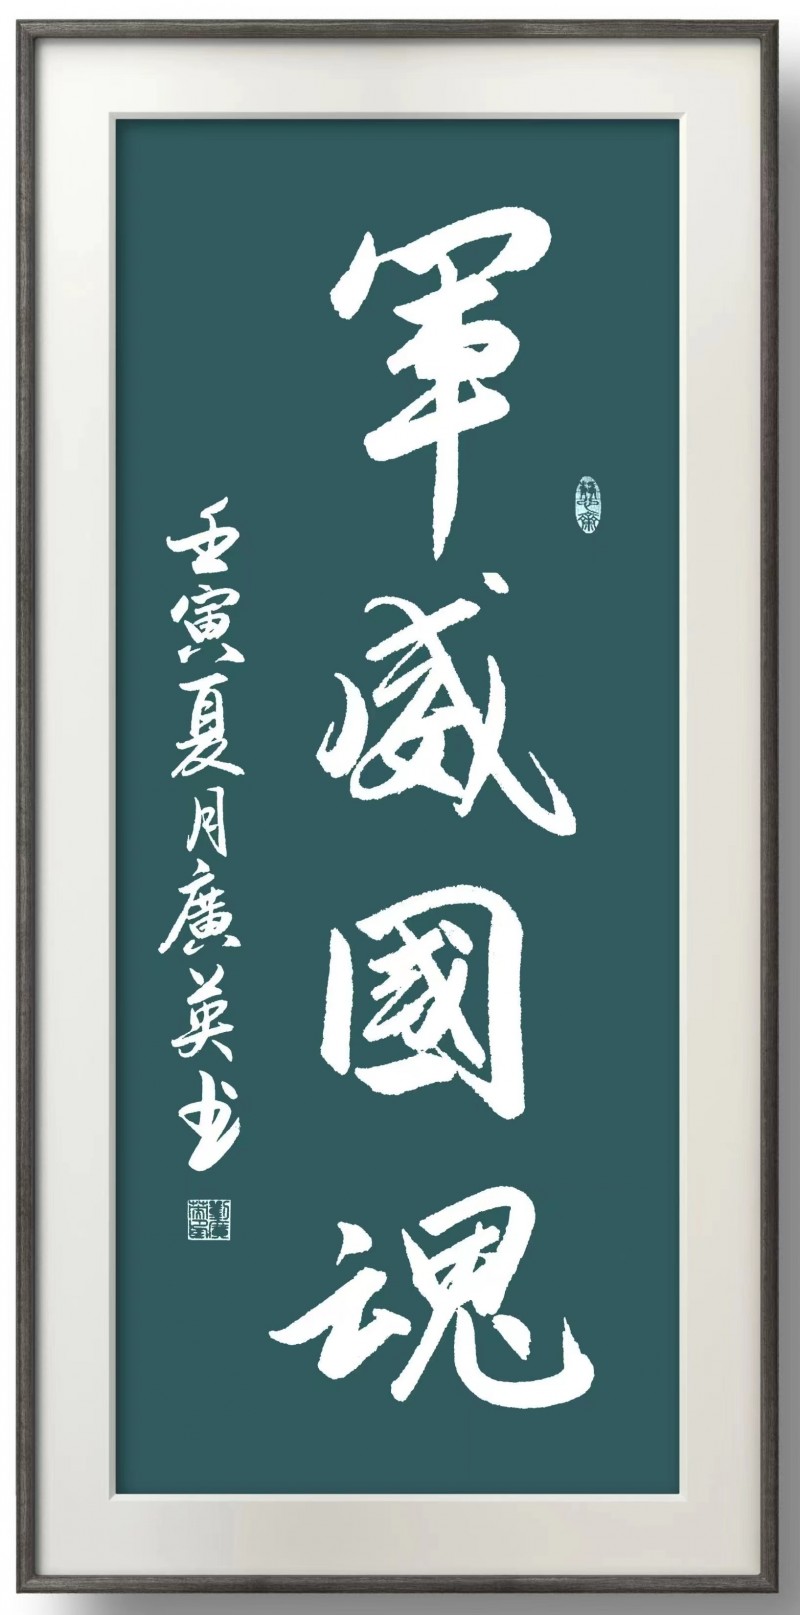 刘广英——中宣盛世国际书画院会员、著名书画家